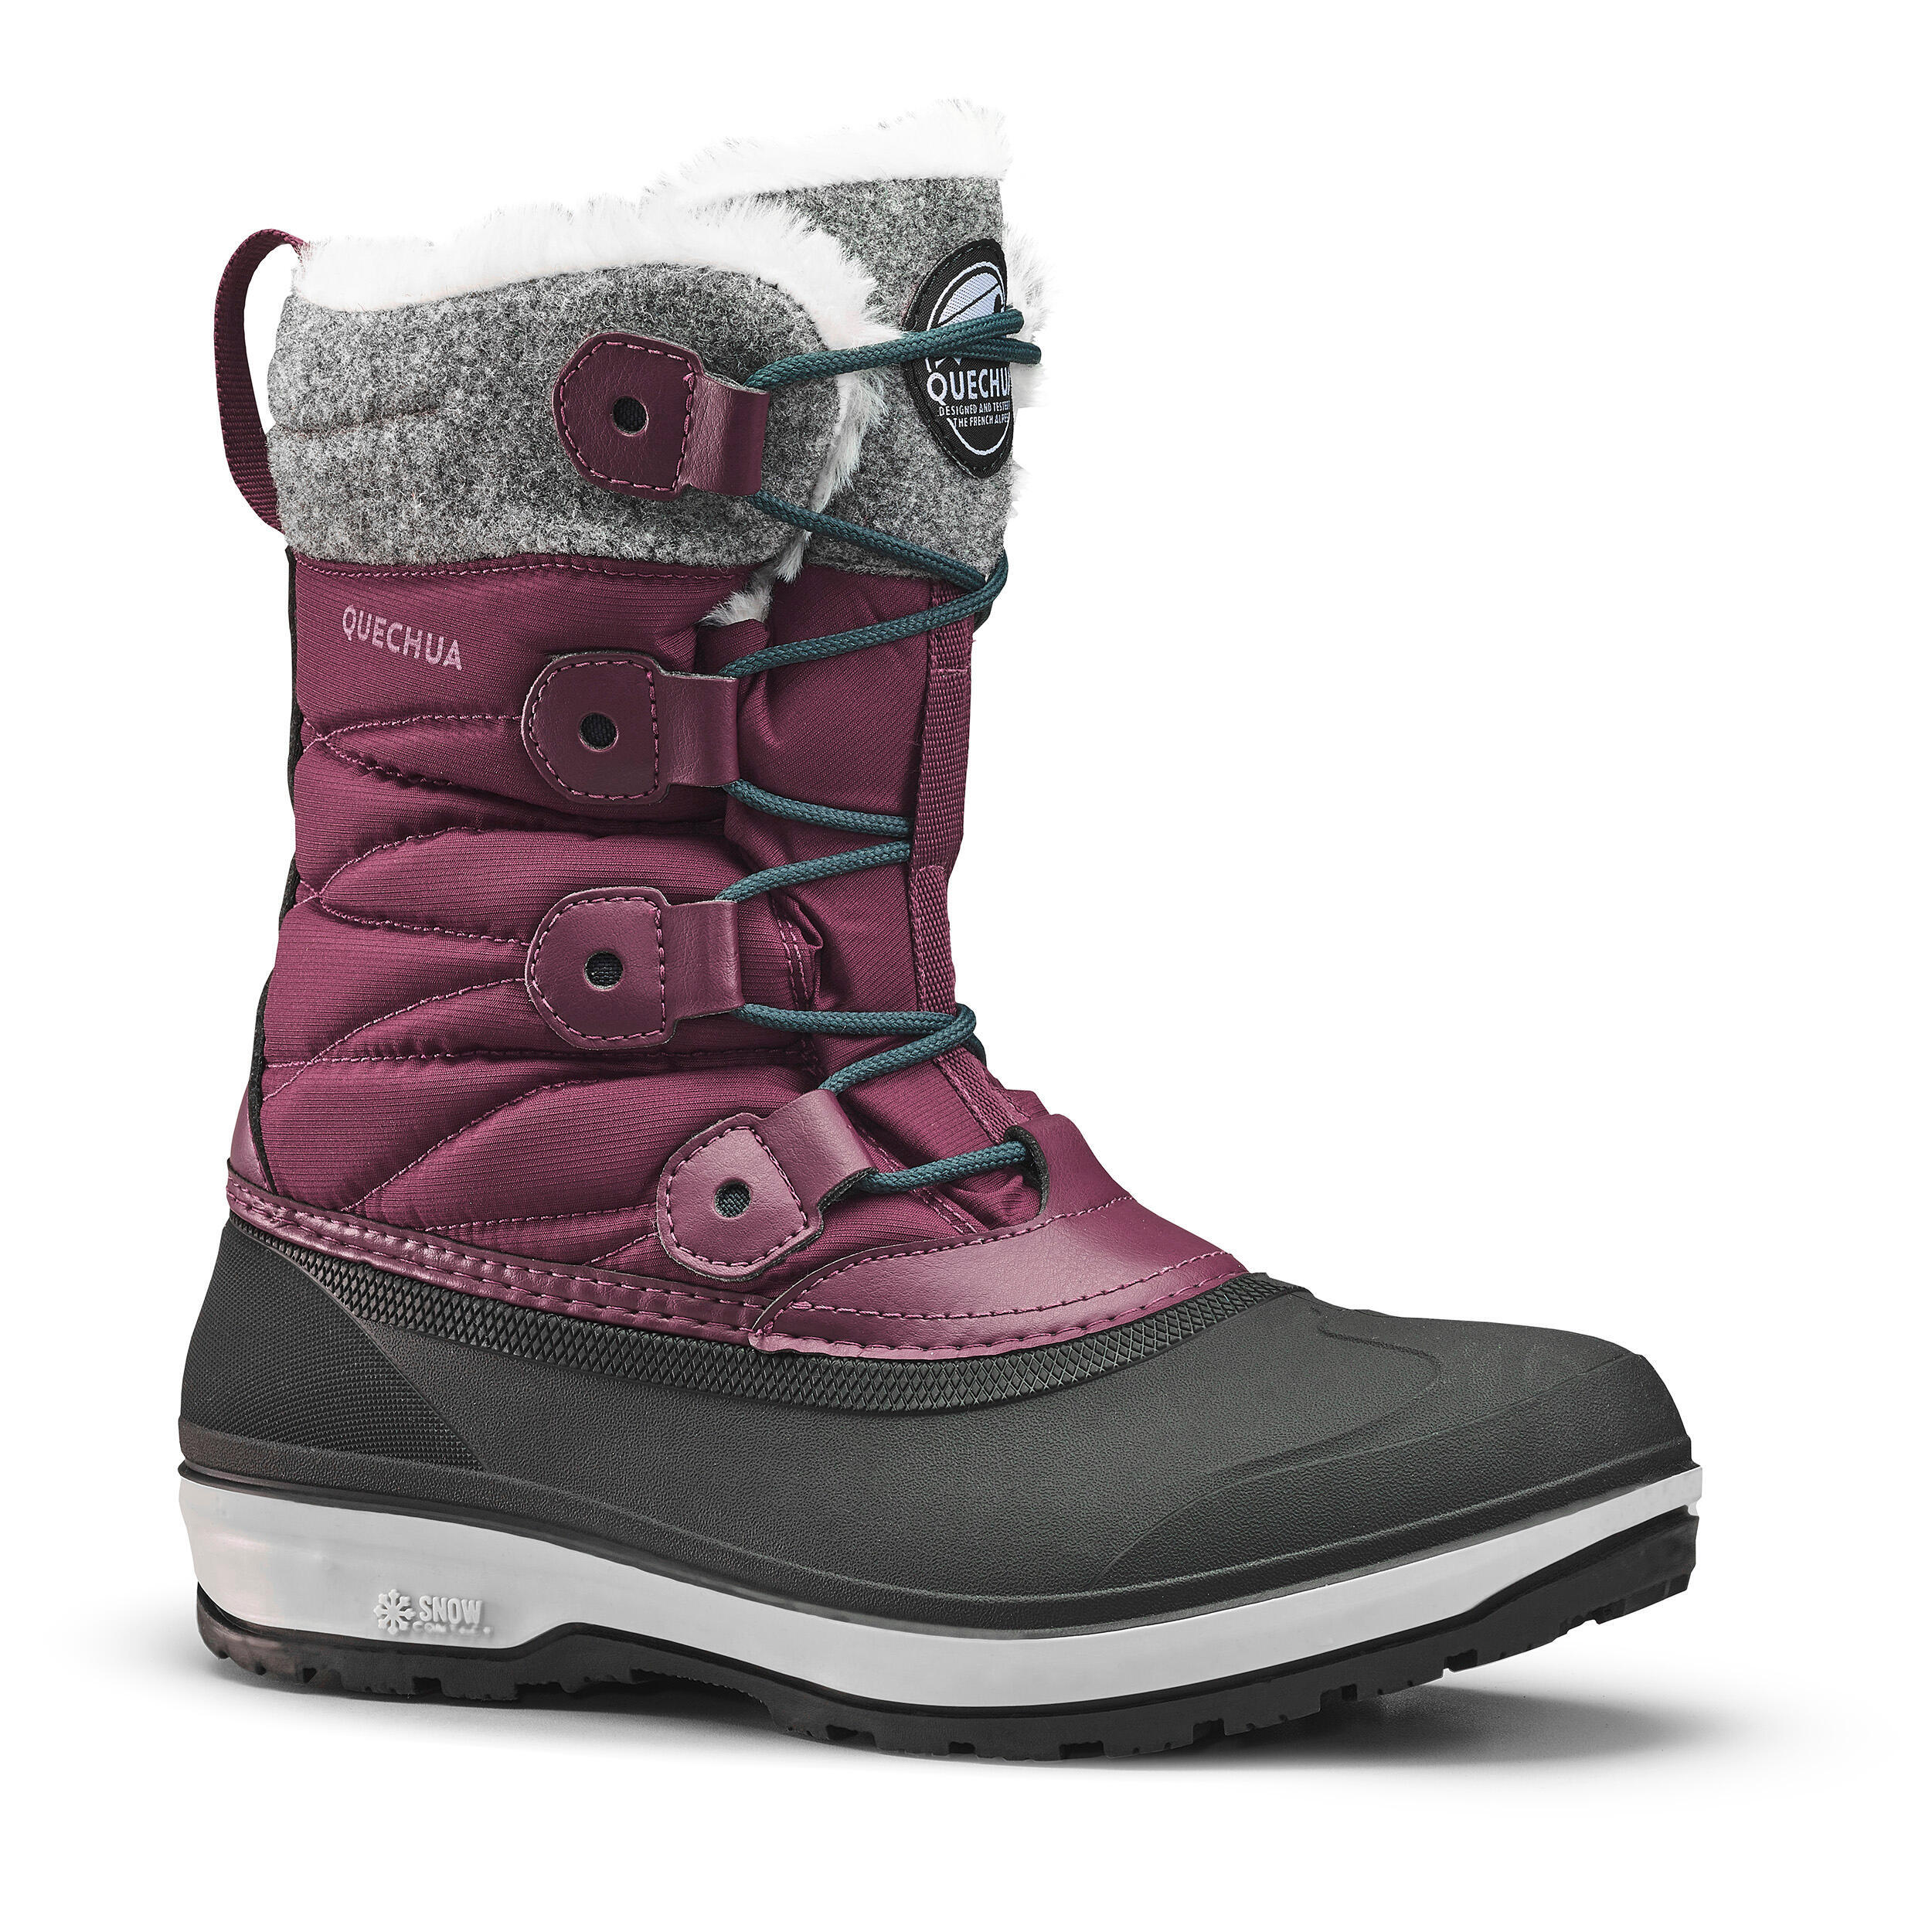 QUECHUA Women's waterproof warm snow boots - SH500 high boot 